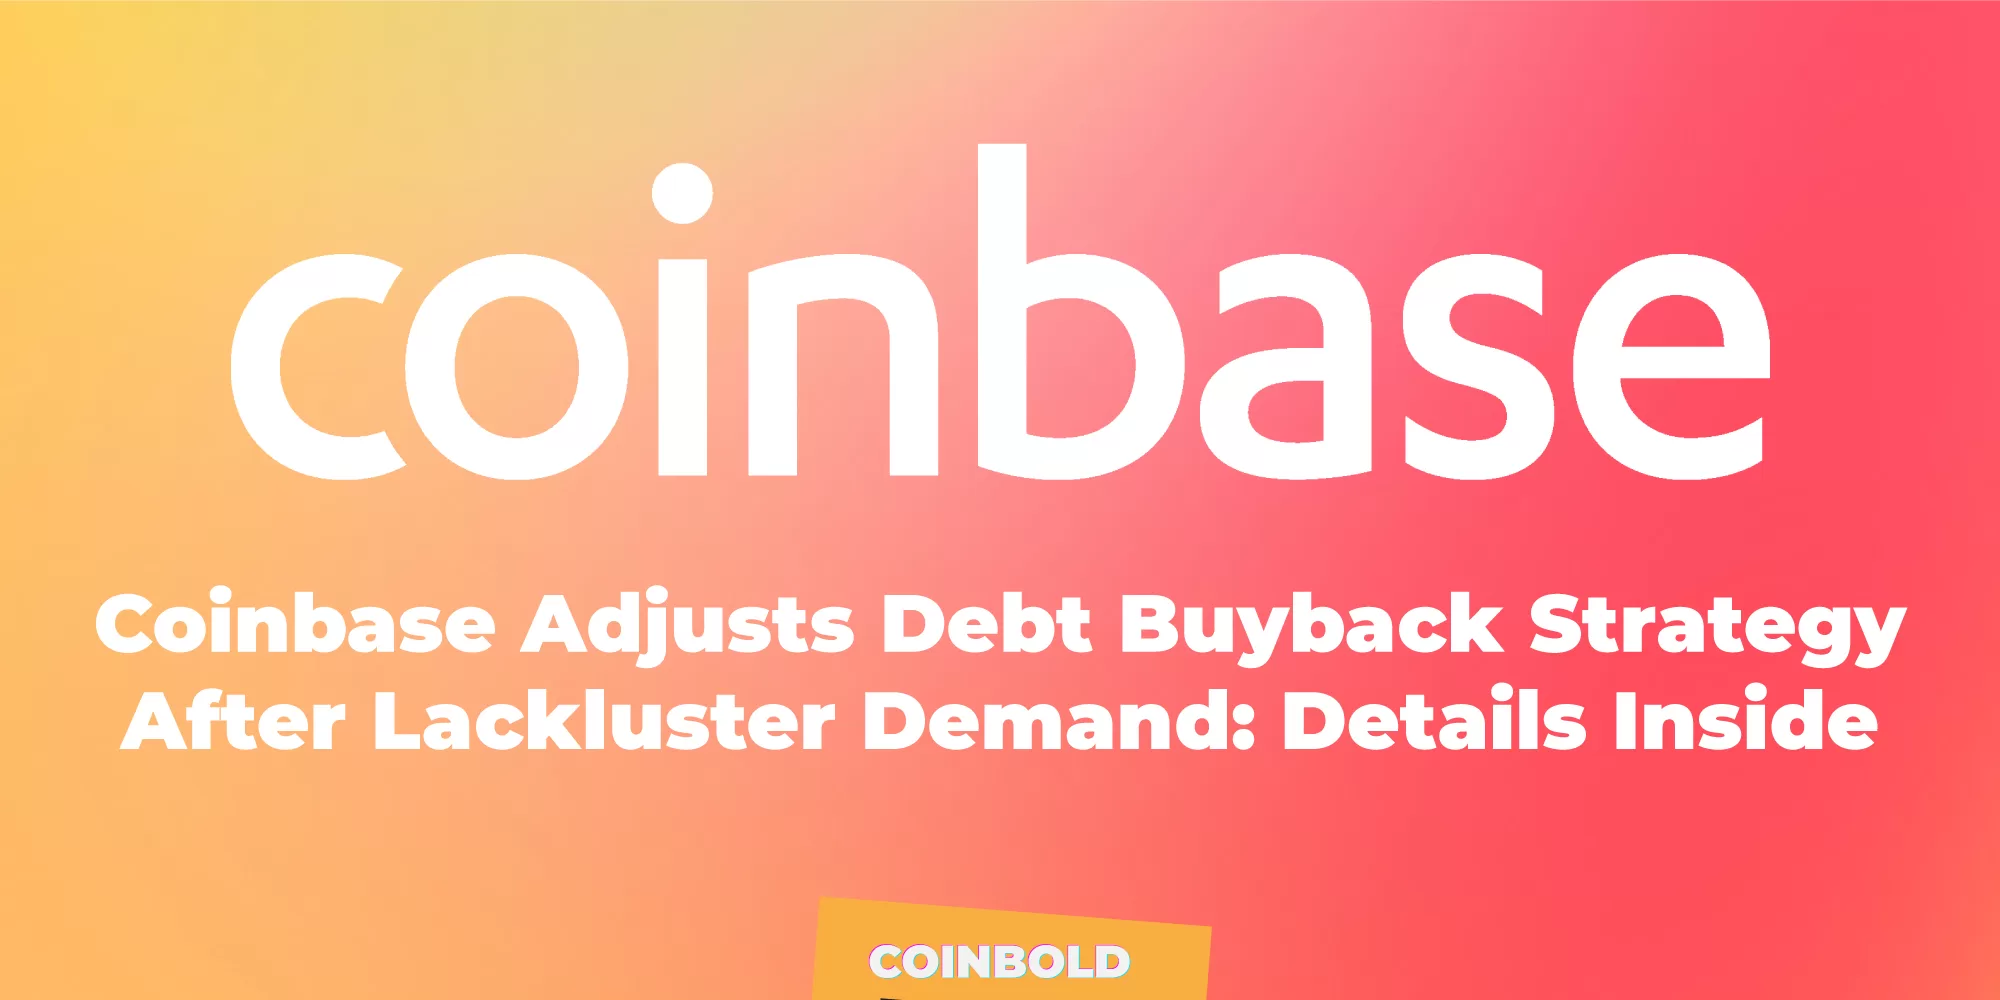 Coinbase Adjusts Debt Buyback Strategy After Lackluster Demand